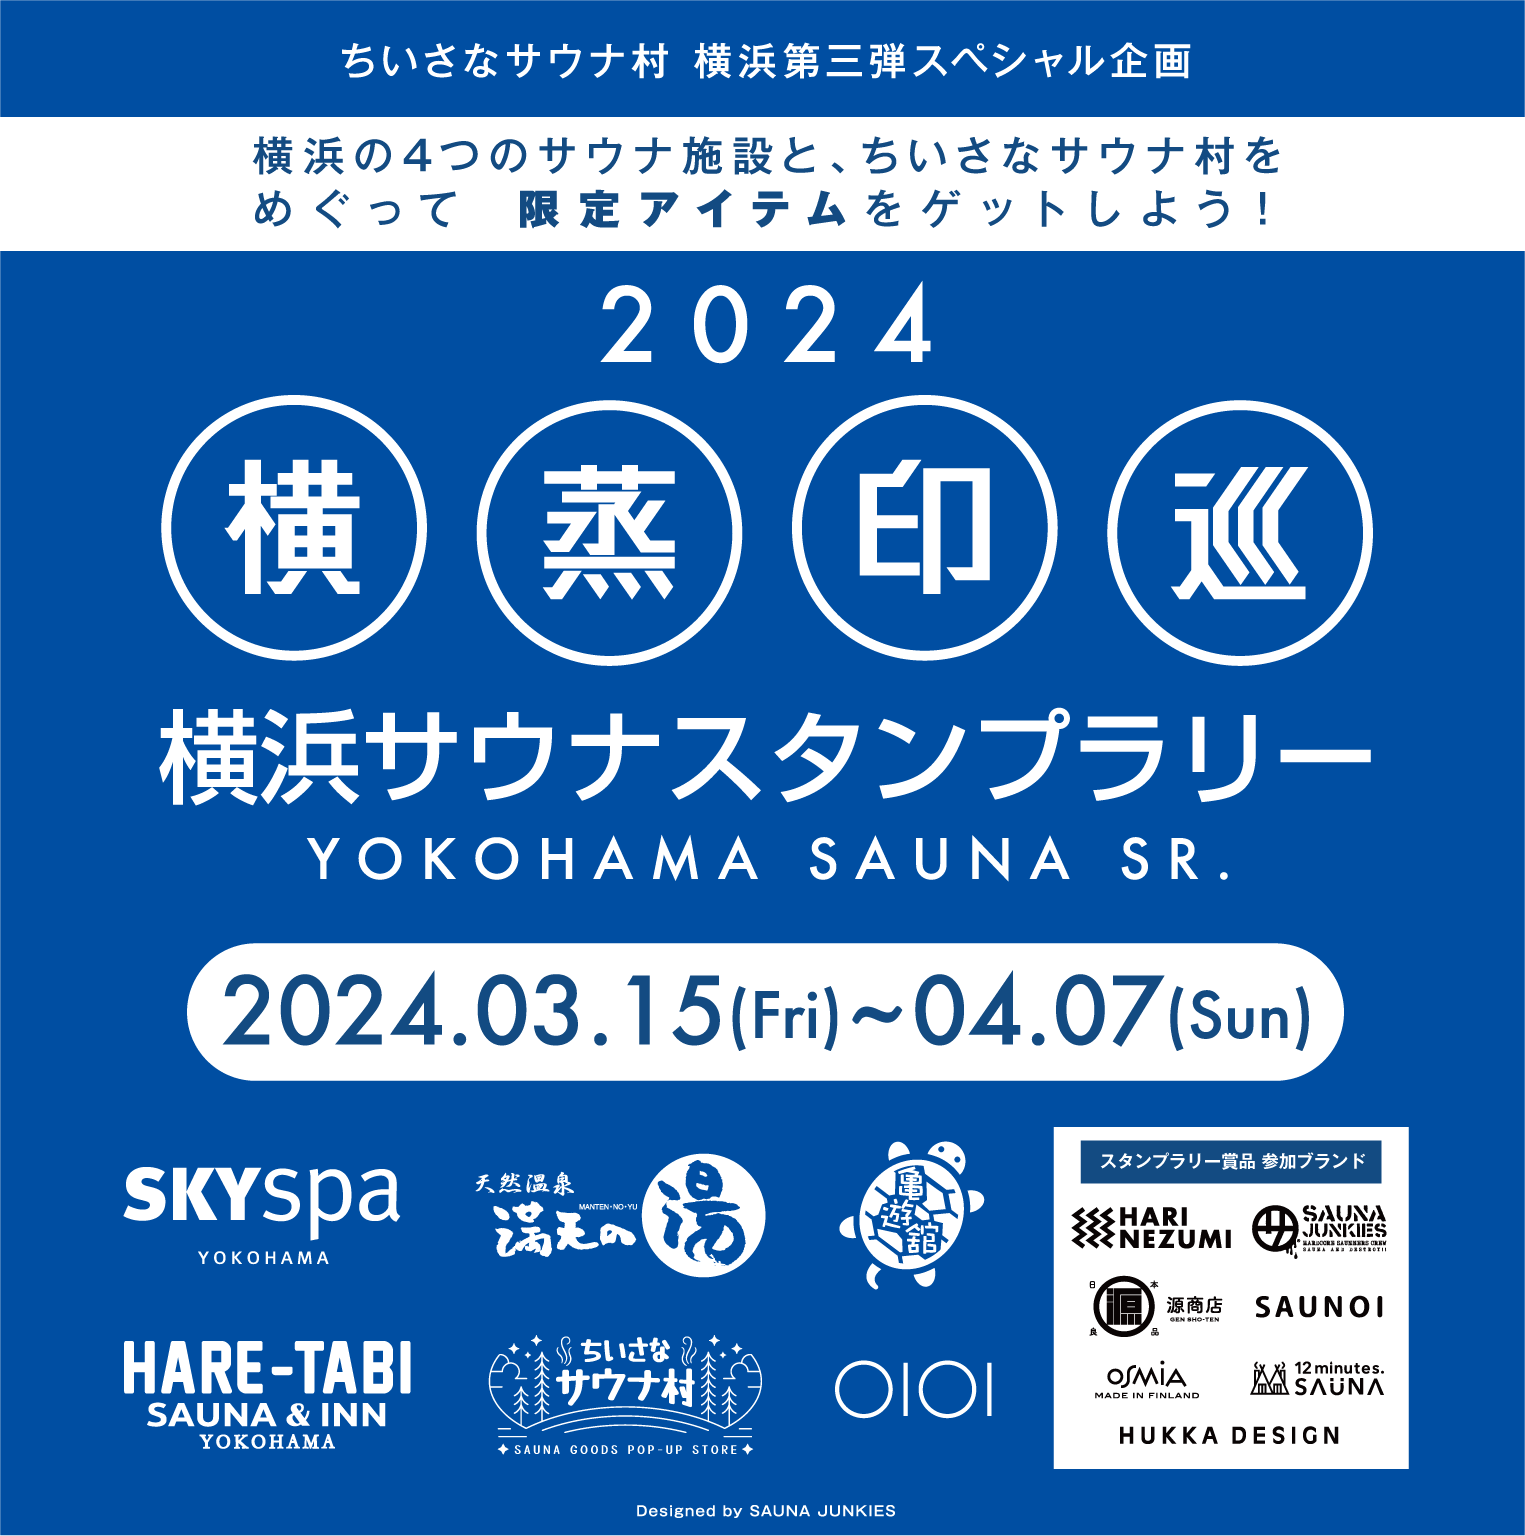 横浜サウナスタンプラリー実施のお知らせ 3月15日〜4月7日 | おすすめキャンペーン情報